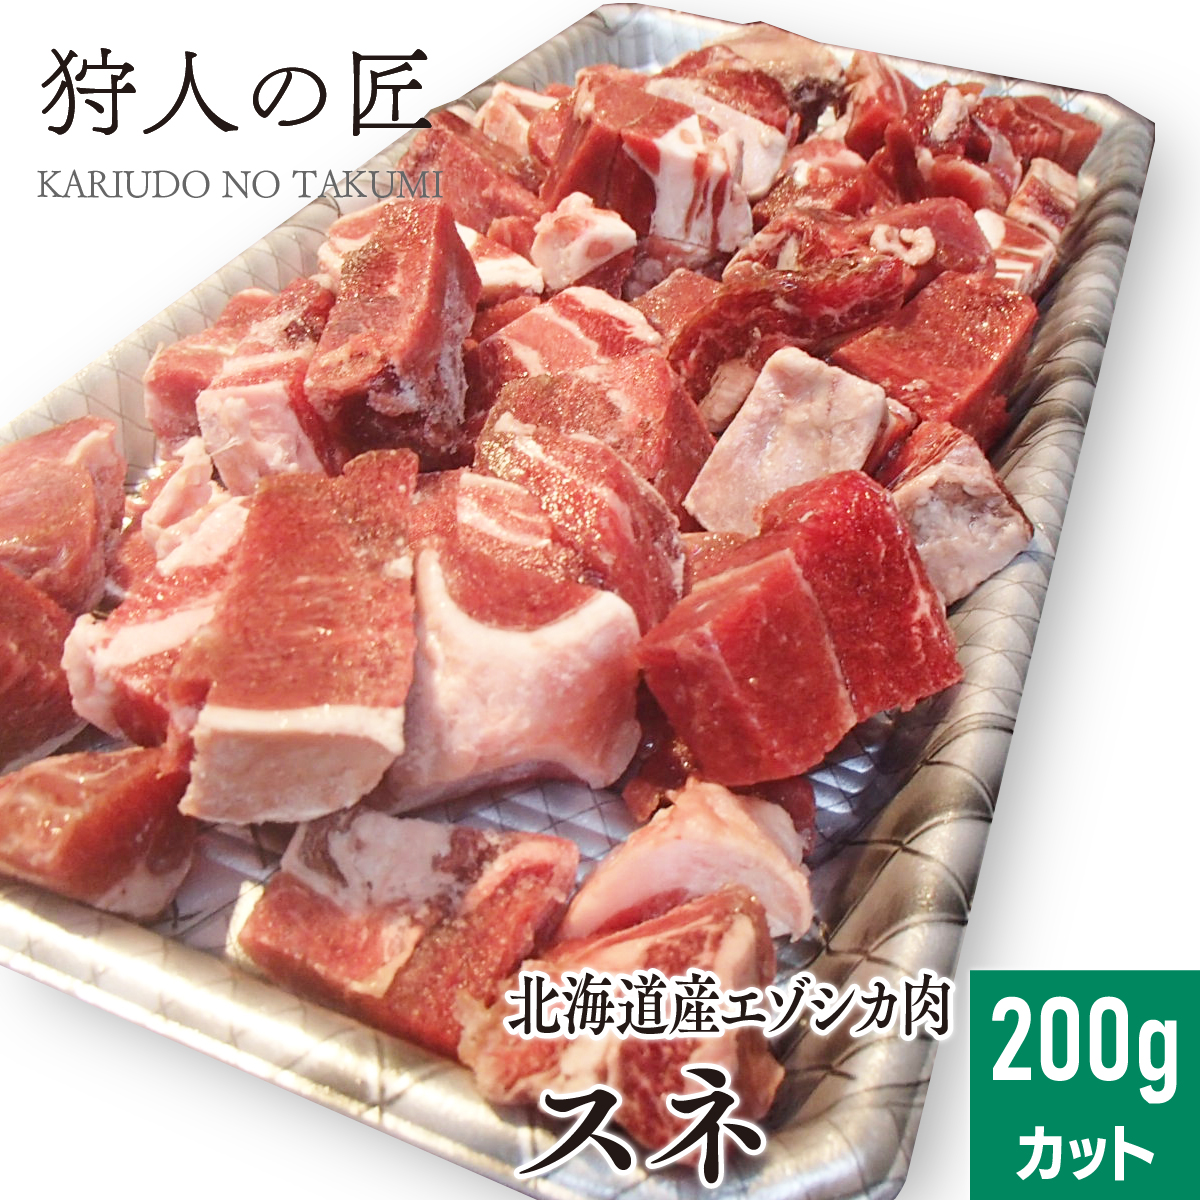 エゾ鹿肉 スネ肉 200g (カット)